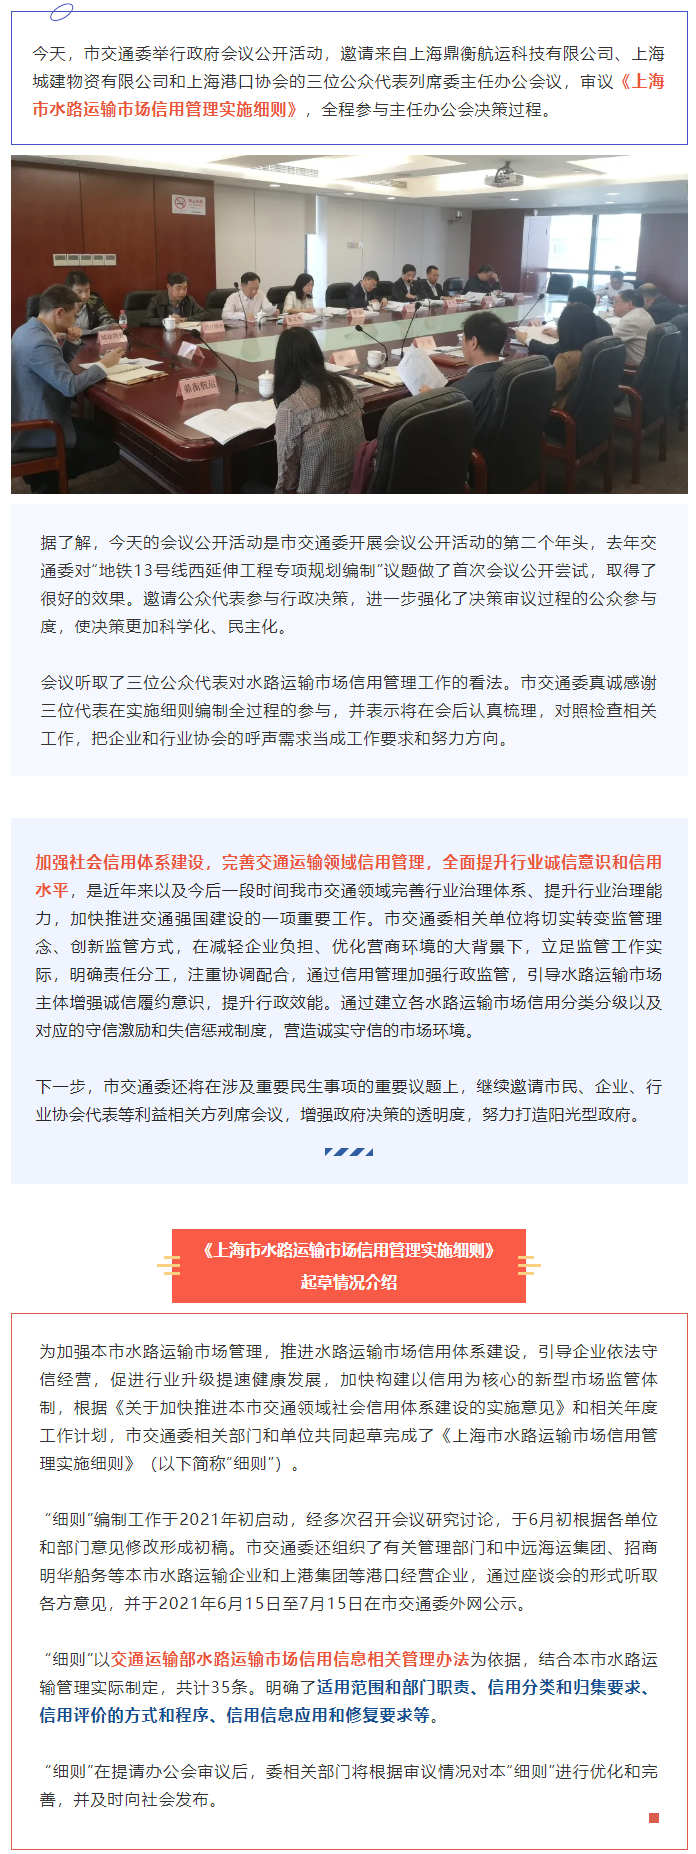 政务公开！三位公众代表参与《上海市水路运输市场信用管理实施细则》决策.png